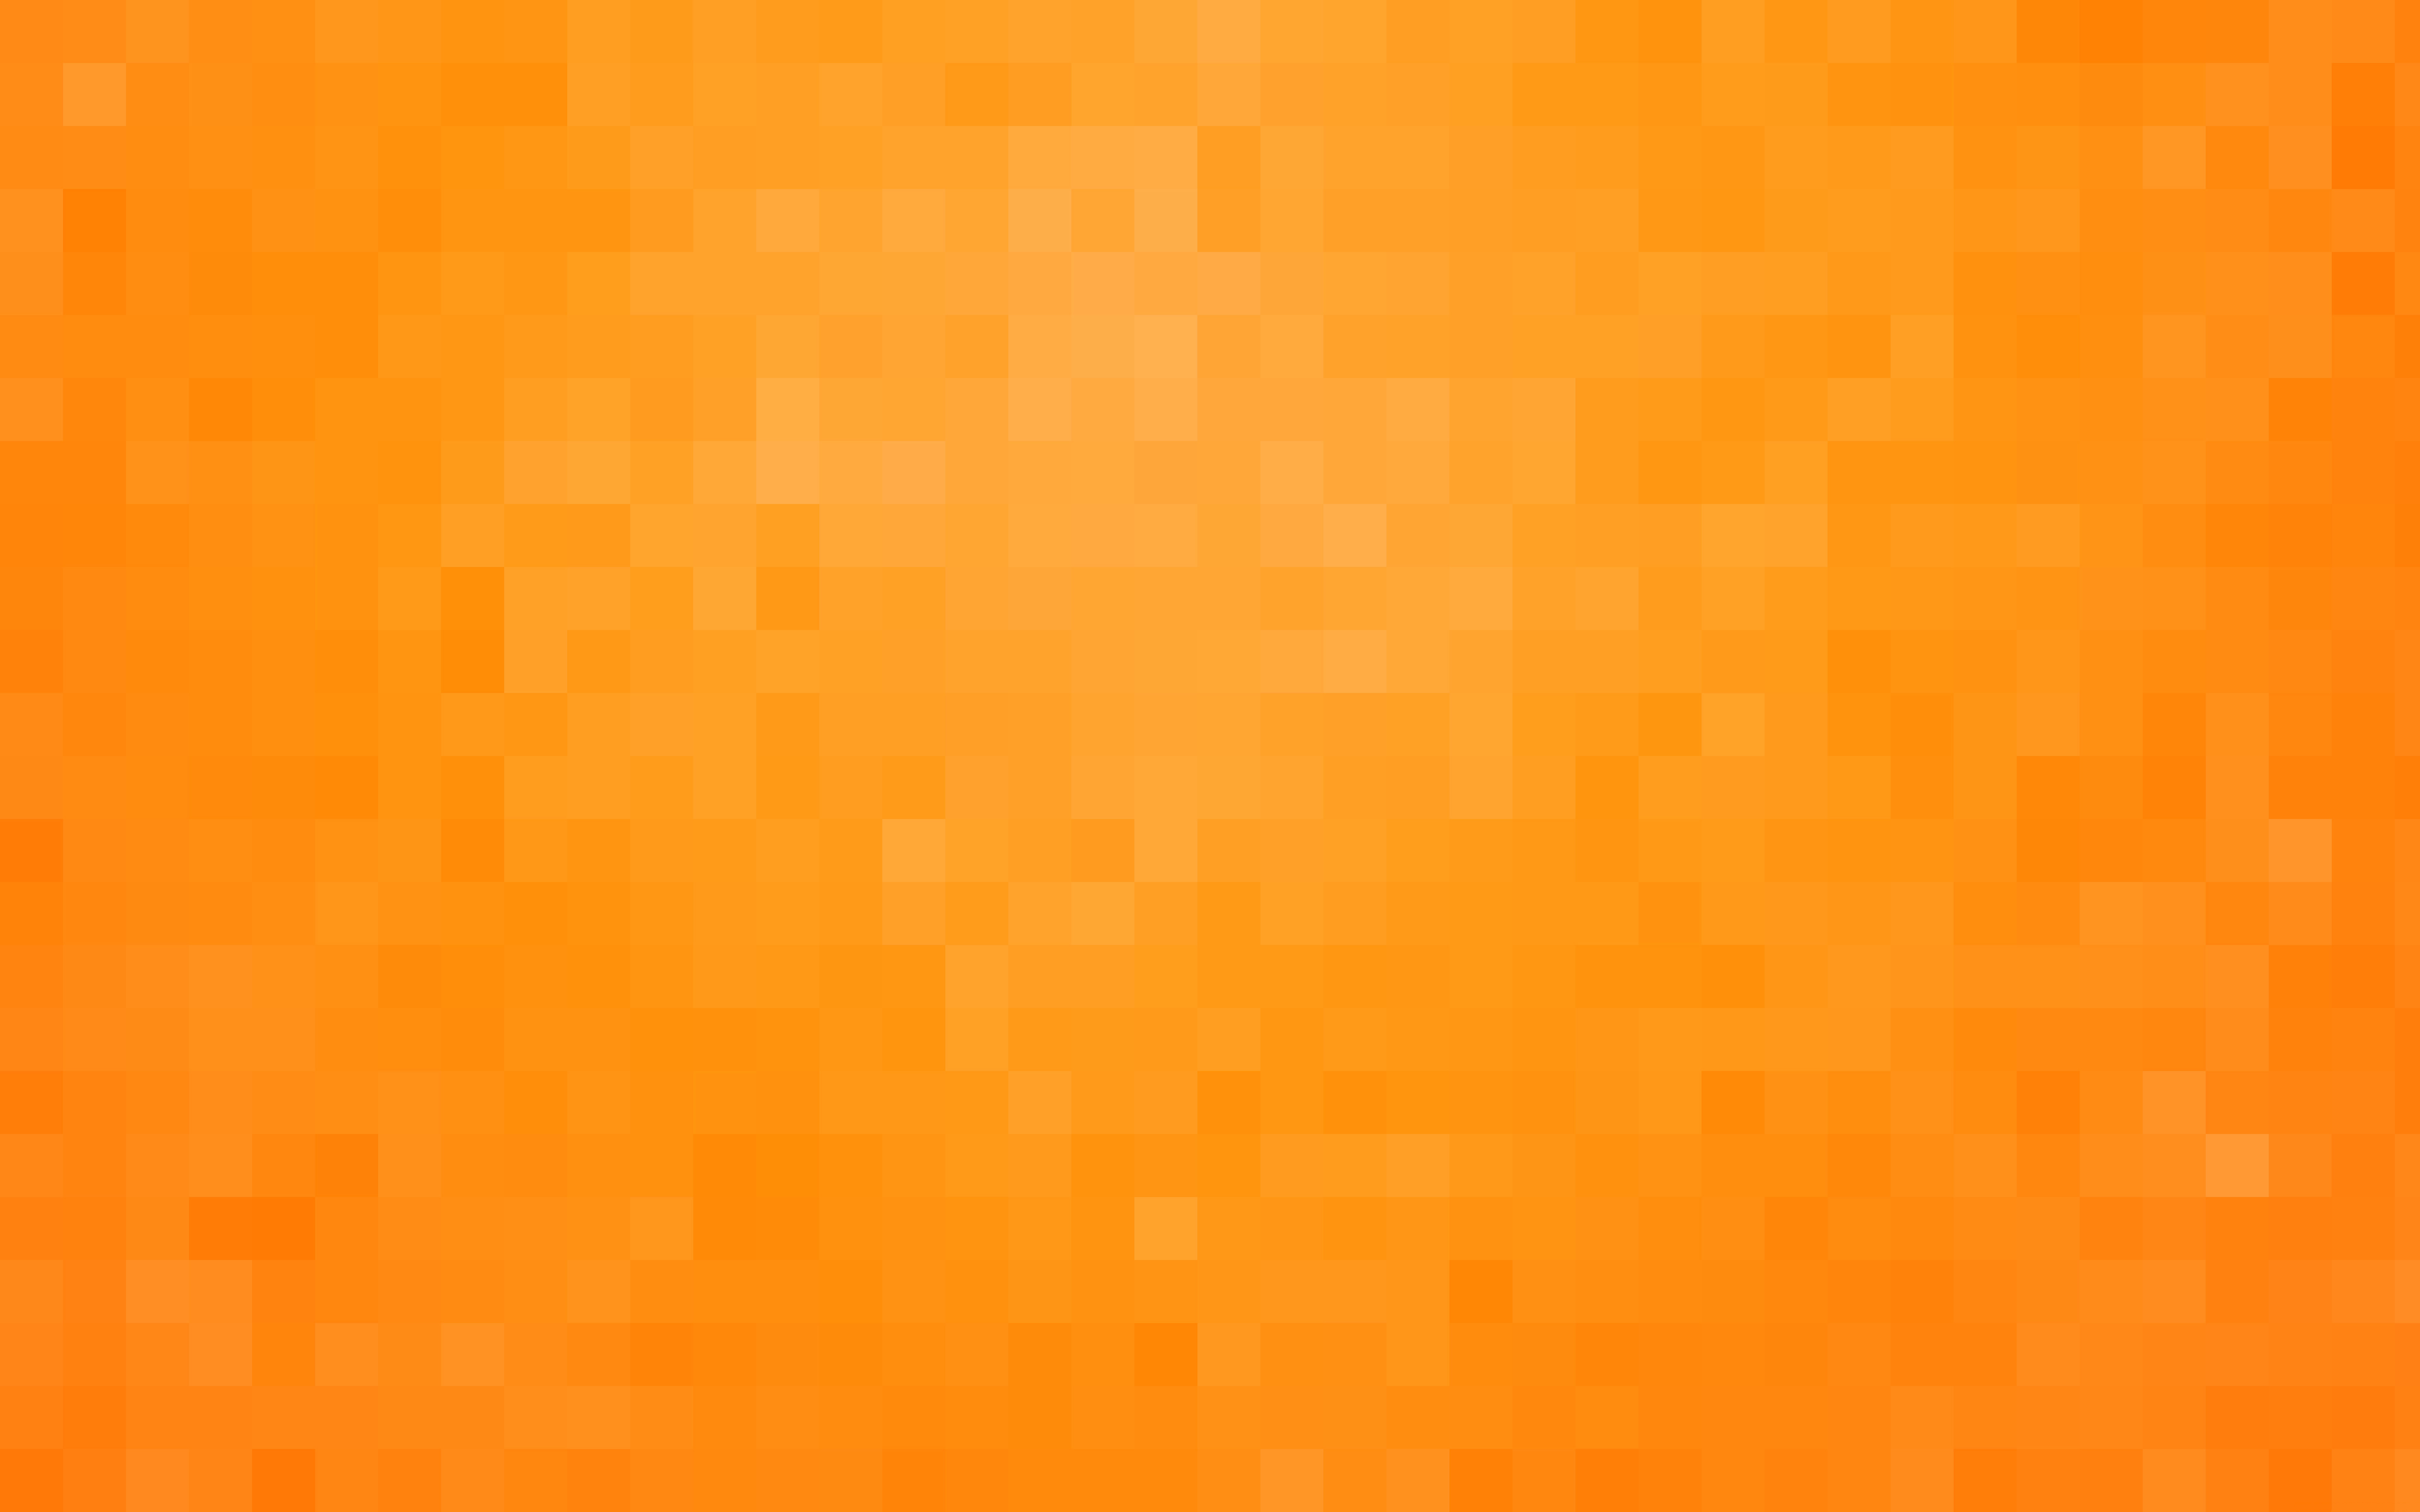 8K wallpaper, background, wallpaper, pixels, orange, texture, 7680х4800, 8К обои, фон, обои, пиксели, оранжевый, текстура